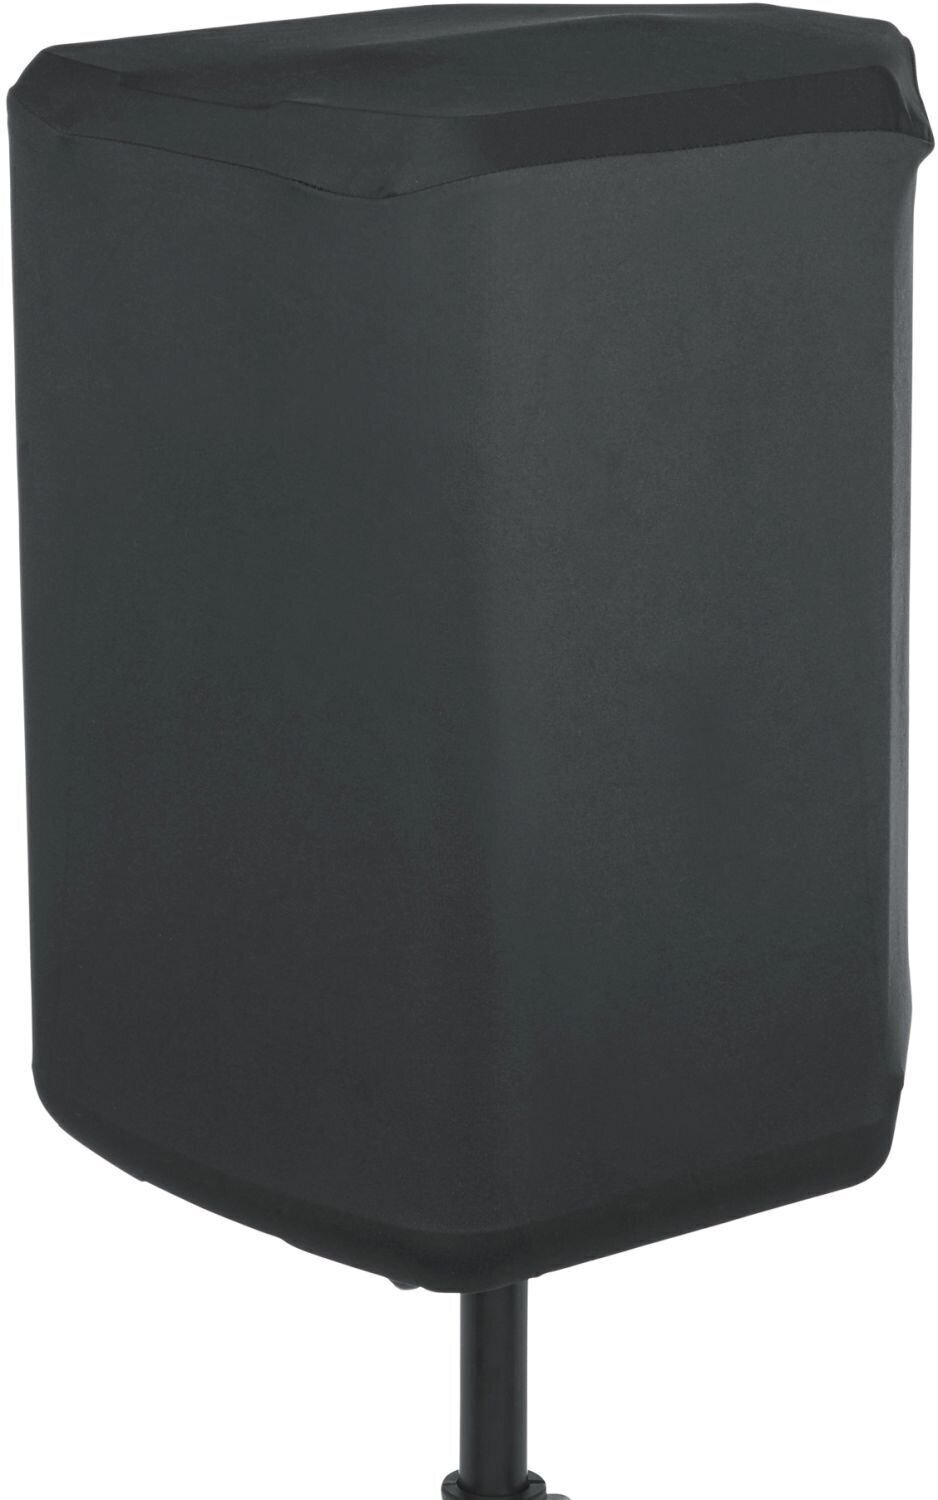 Sac de haut-parleur JBL Stretch Cover Eon One Compact Sac de haut-parleur